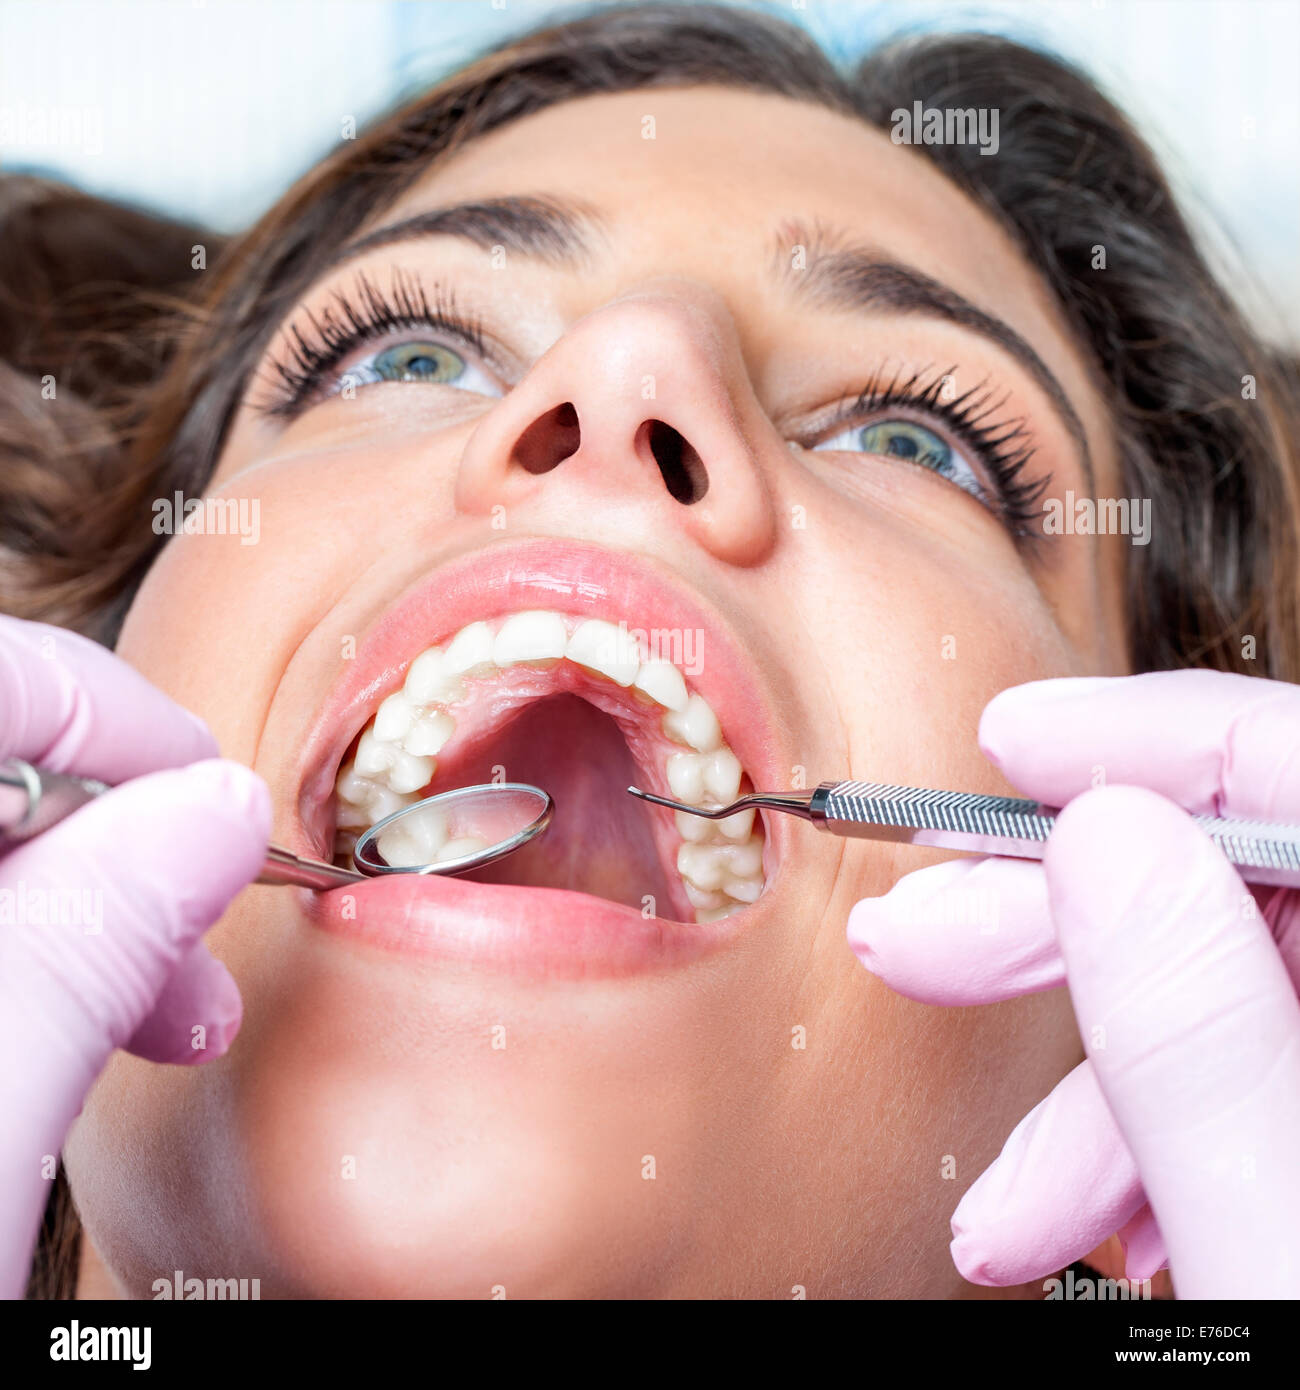 Extreme close up of Woman avec la bouche ouverte au check up dentaire Banque D'Images